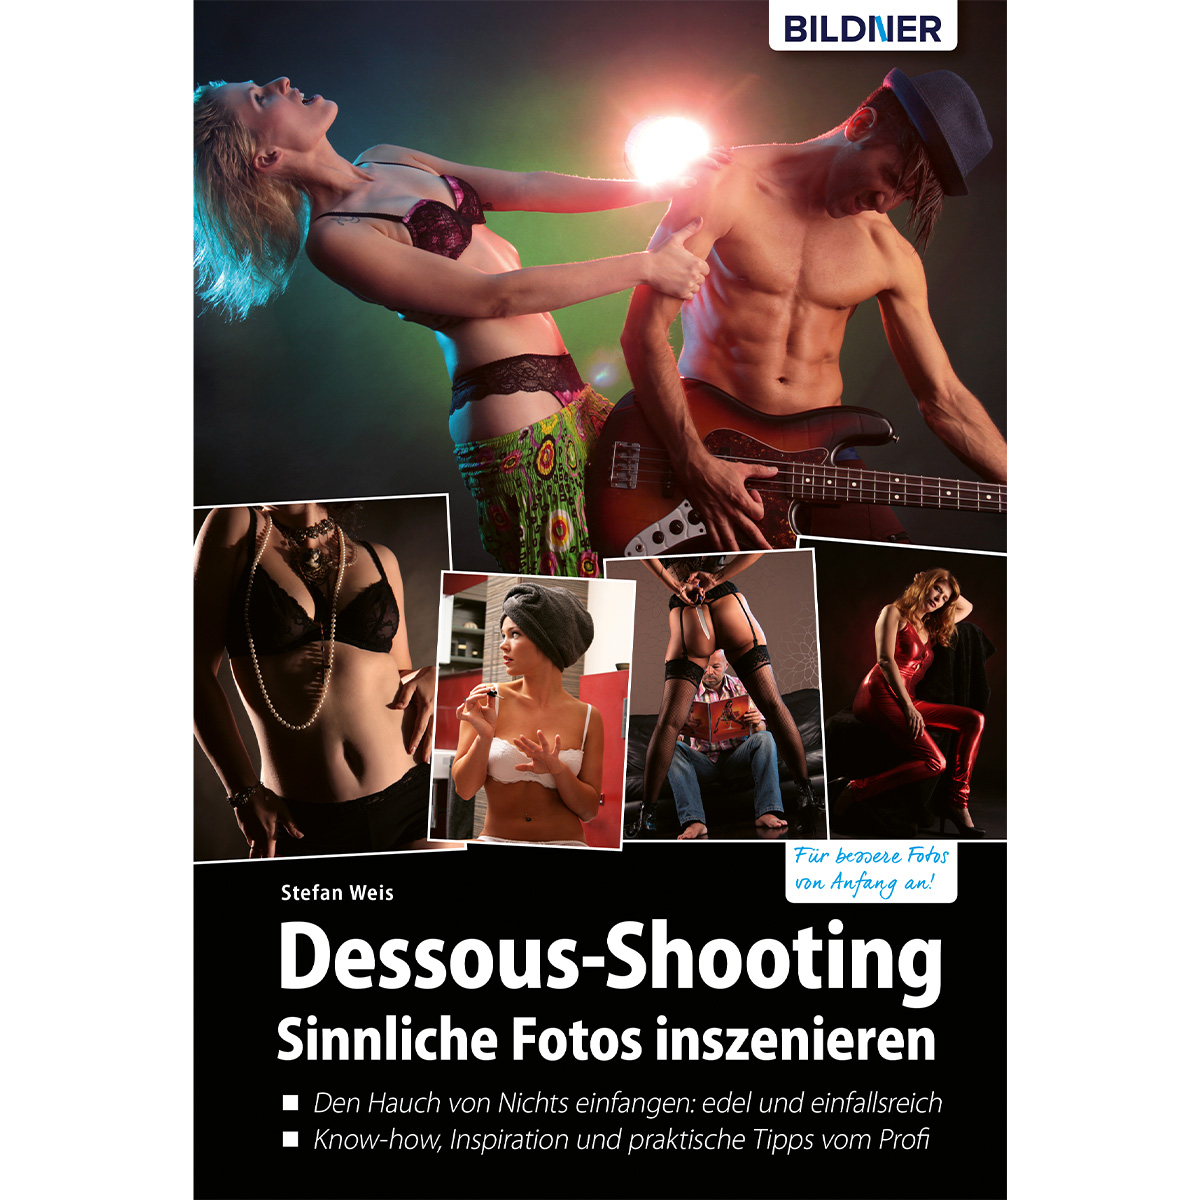 Sinnliche Dessous-Shooting - Fotos inszenieren